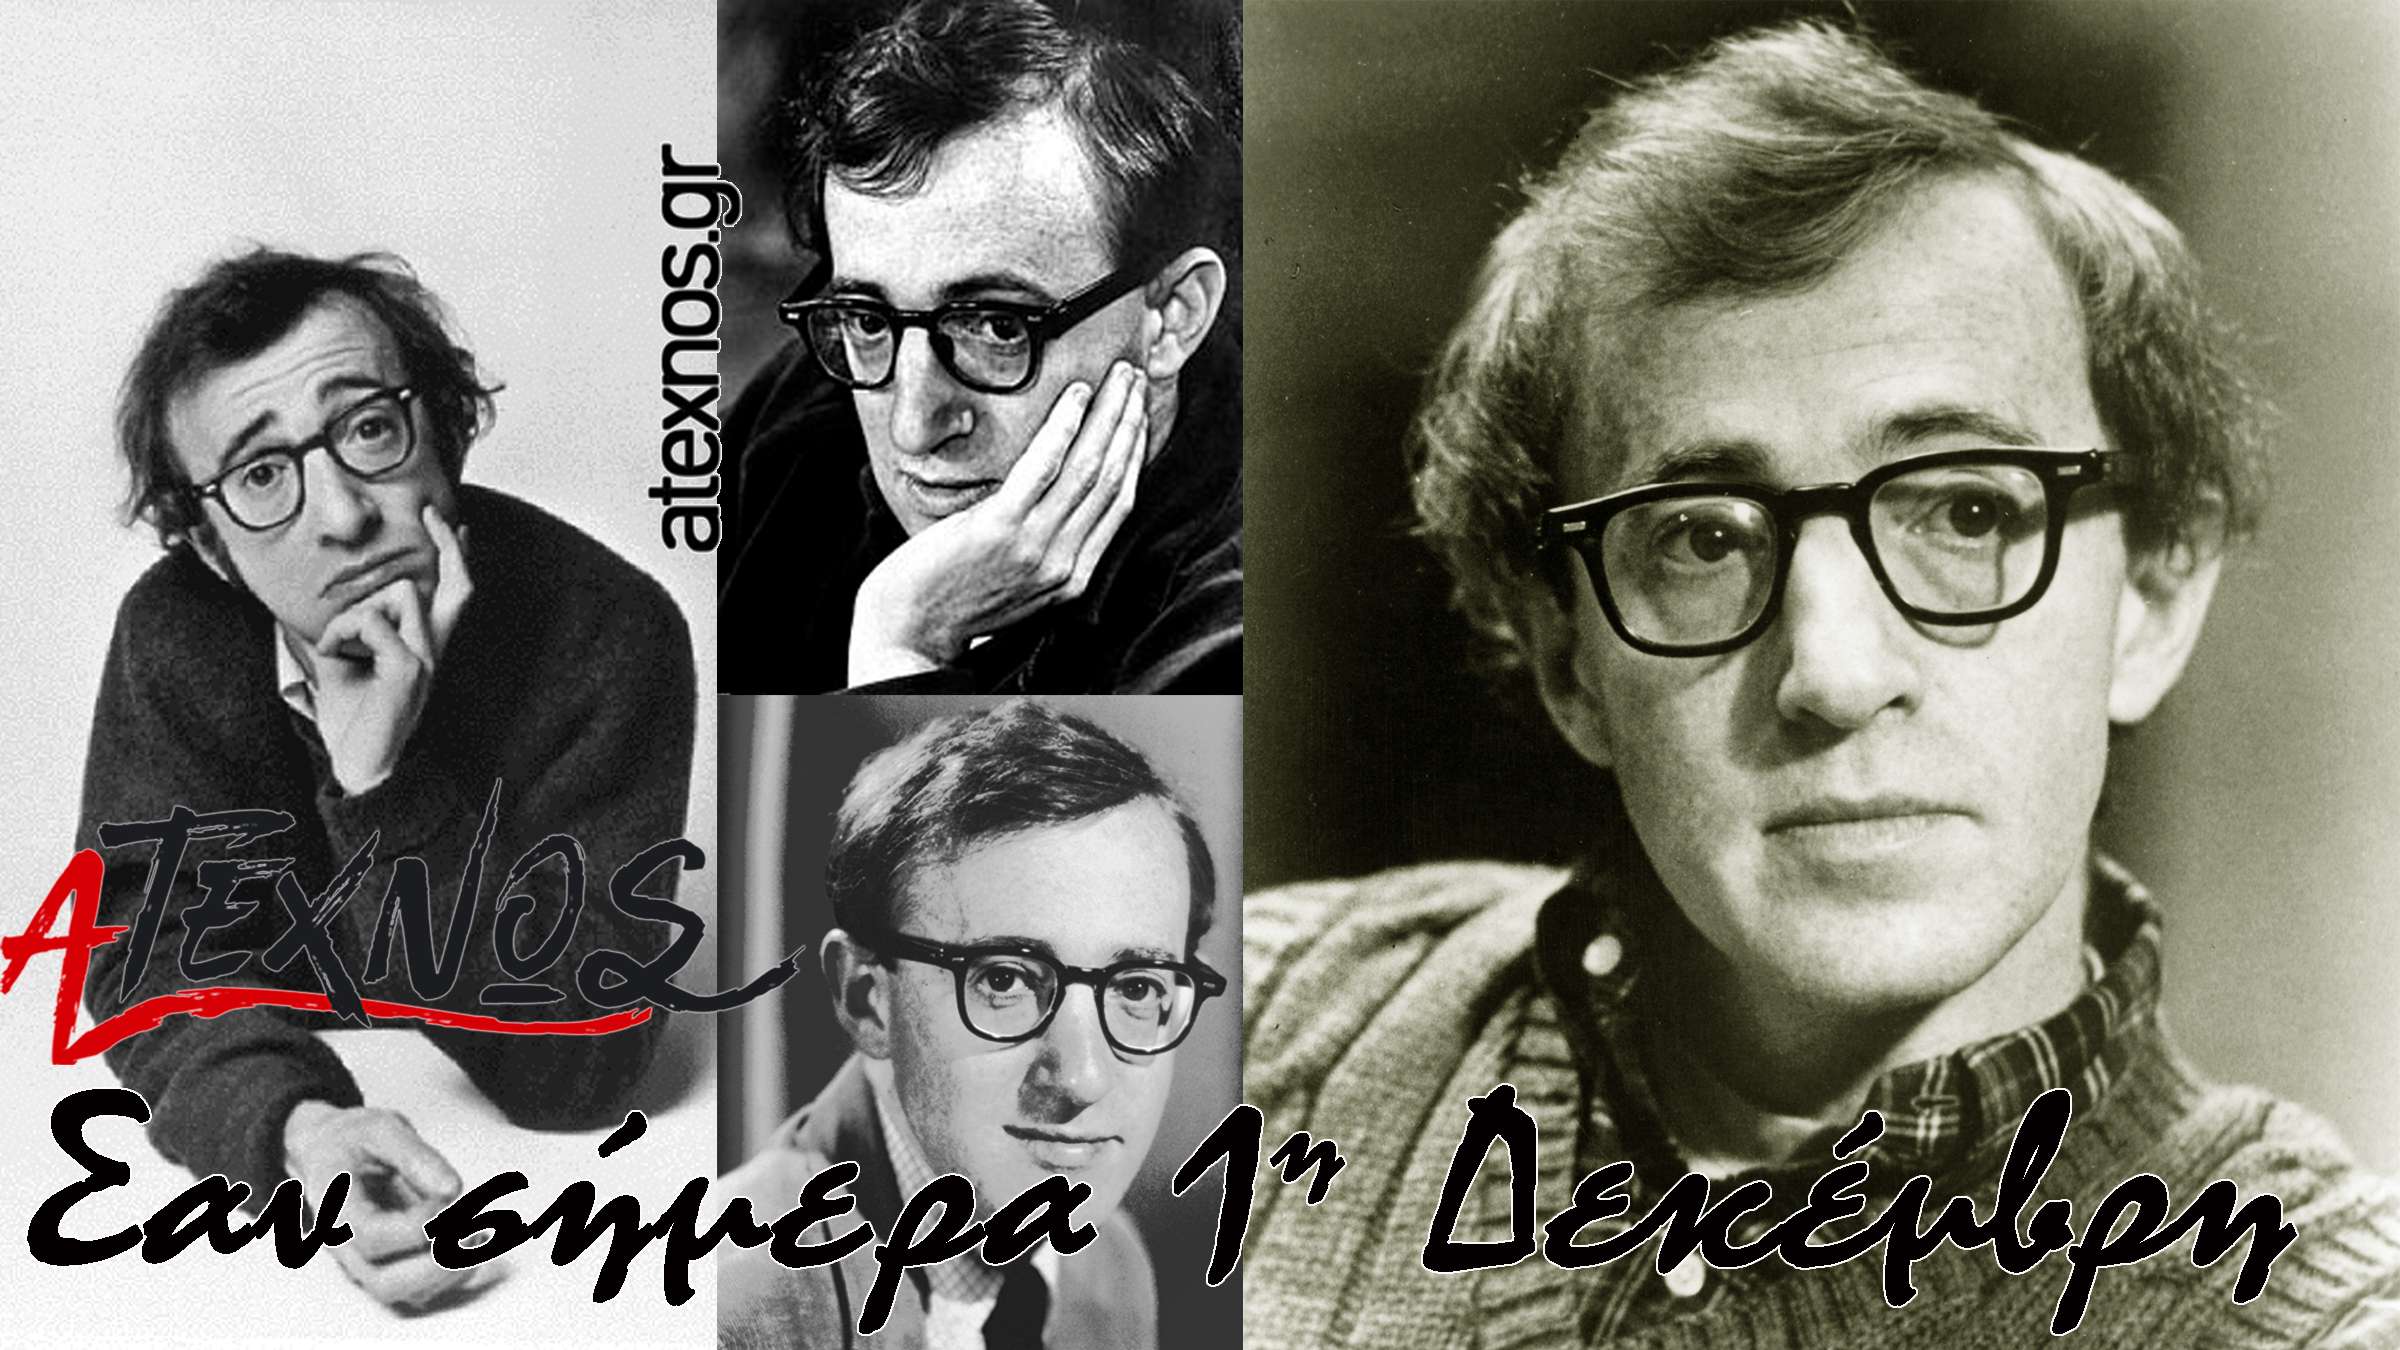 σήμερα Ατέχνως 1η Δεκέμβρη Woody Allen Allen Stewart Konigsberg